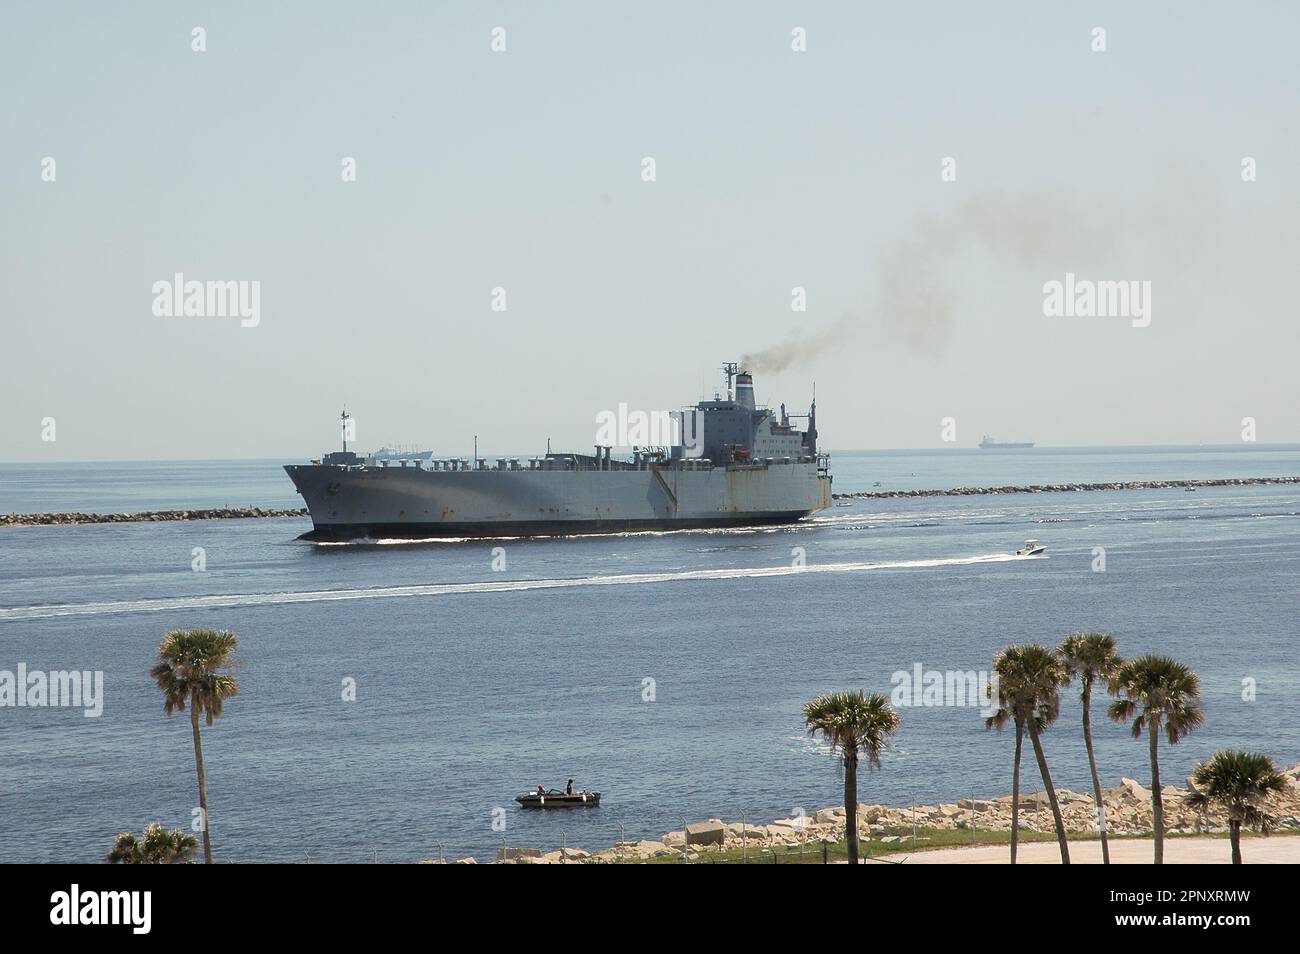 Le bateau militaire Mayport amarré à Flordia Banque D'Images